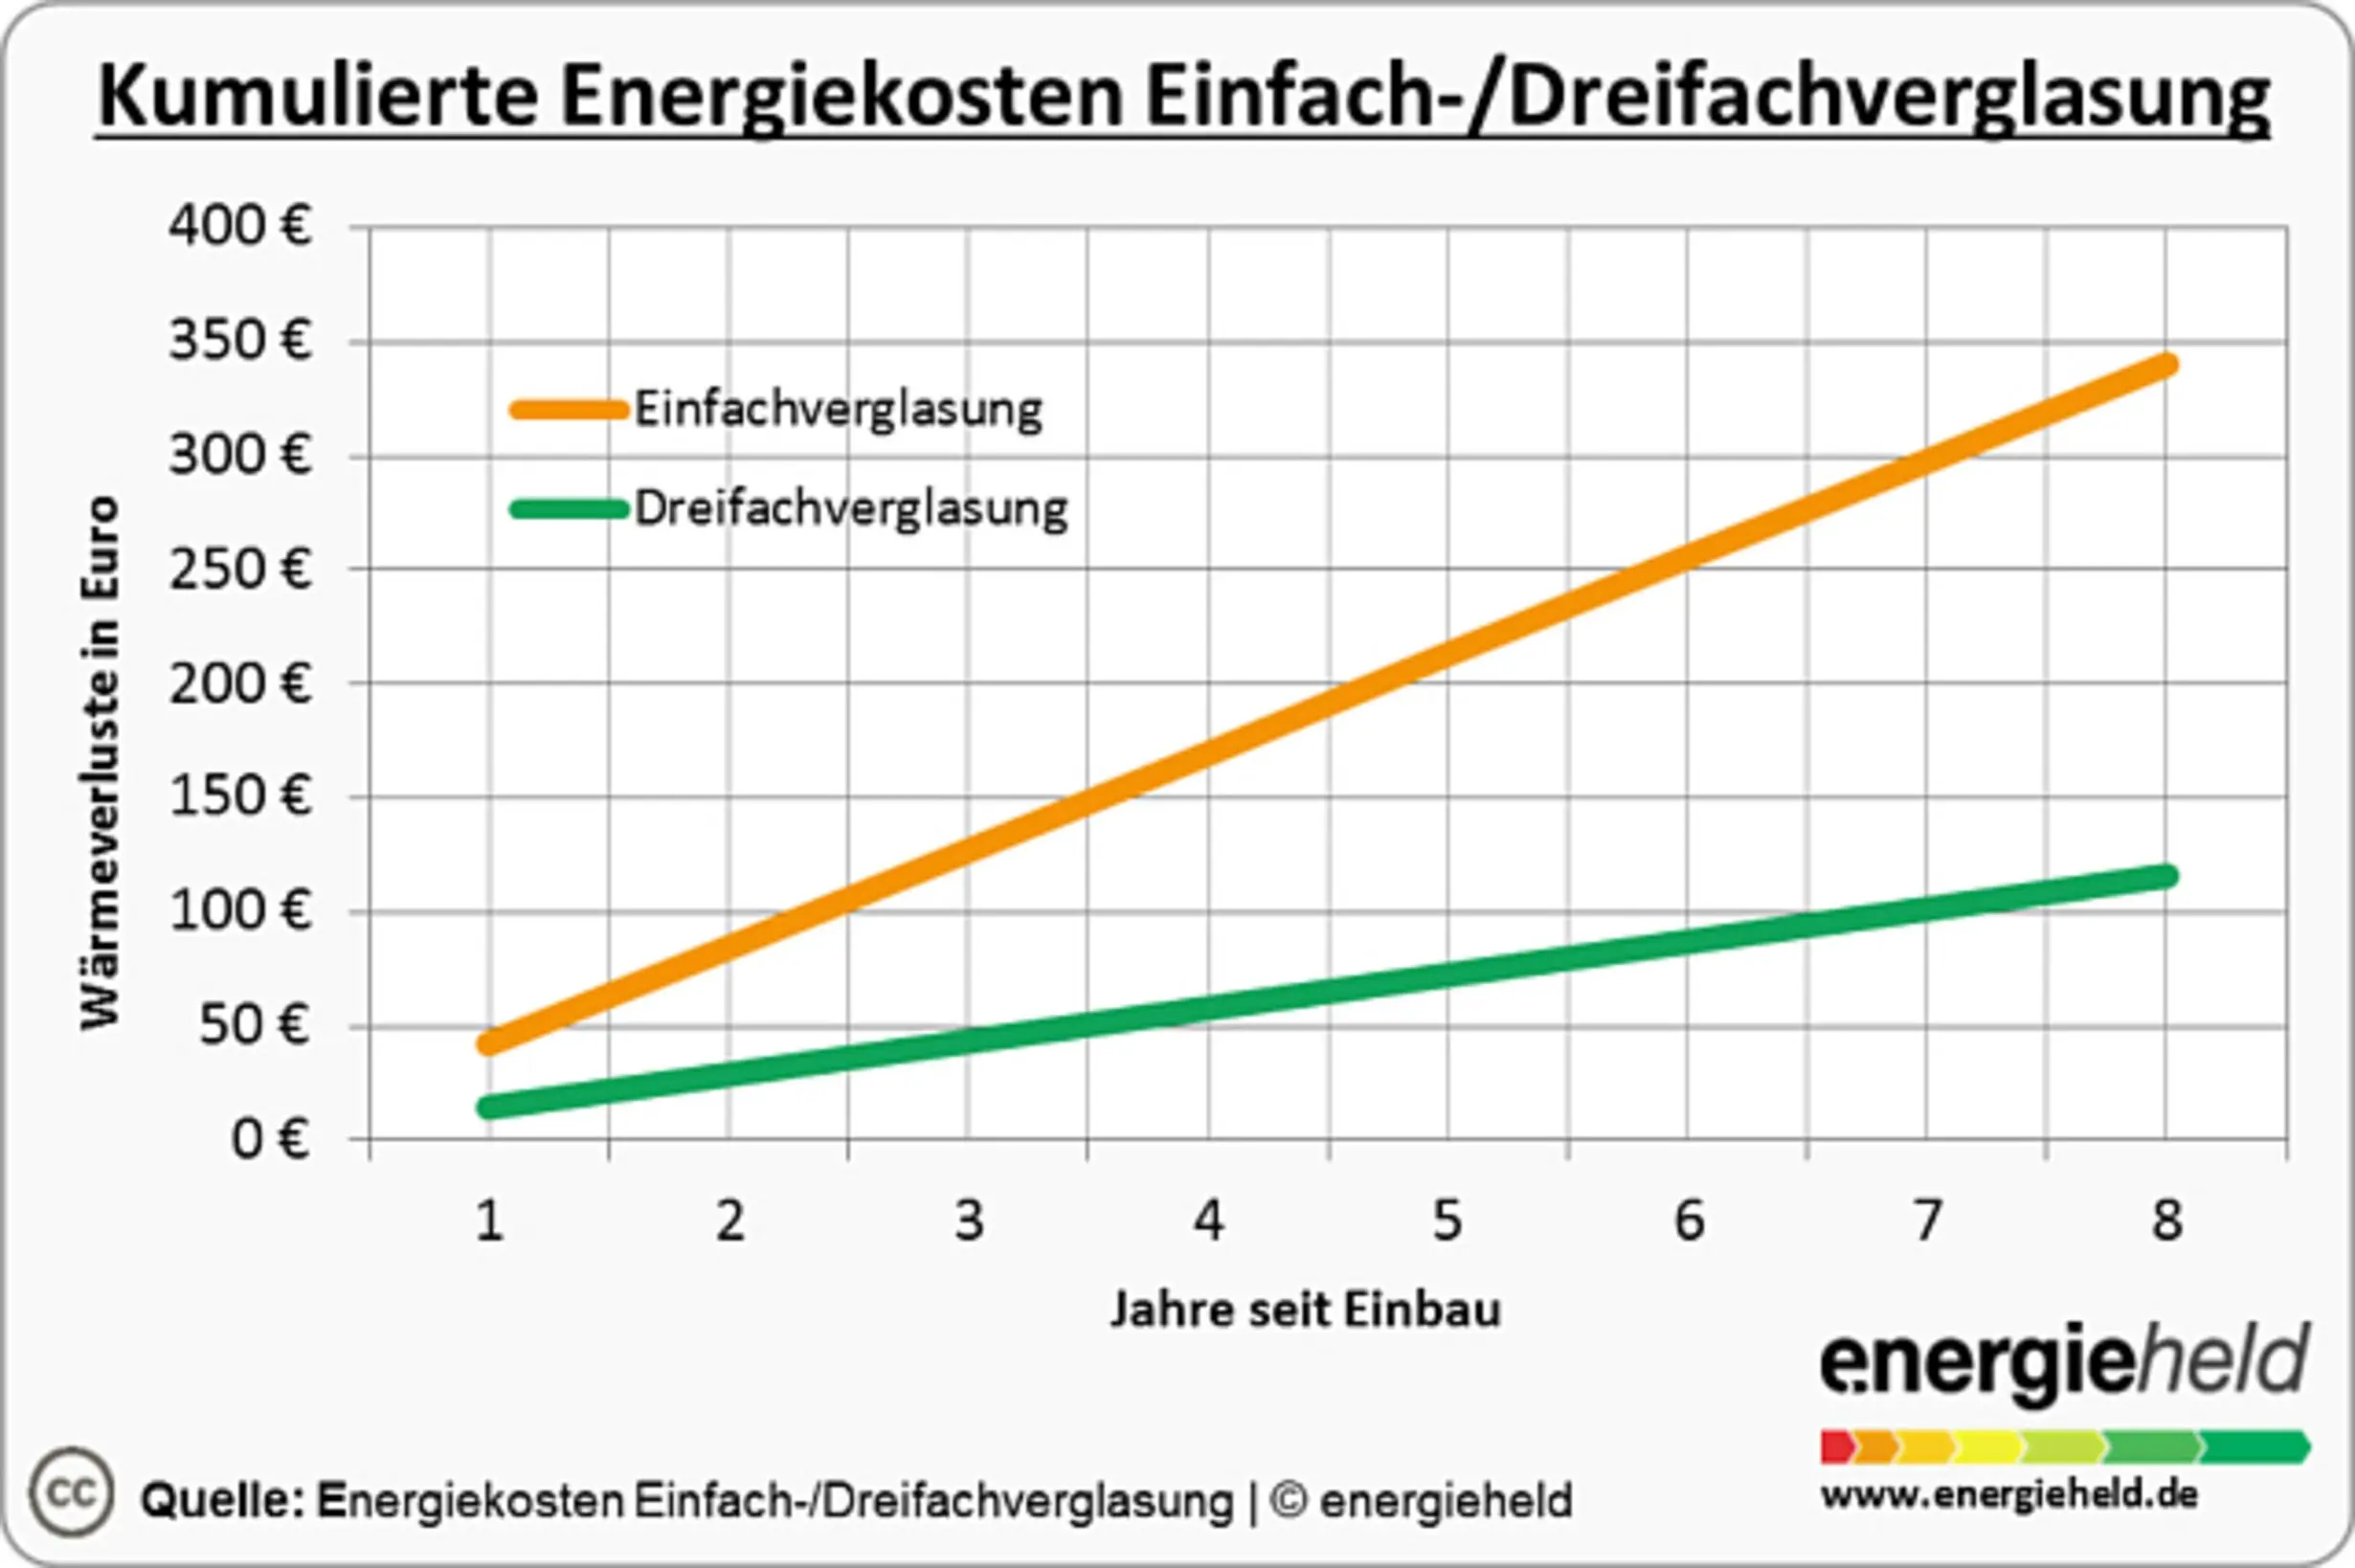 Grafik der Energiekosten bei Einfach- und Dreifachverglasung